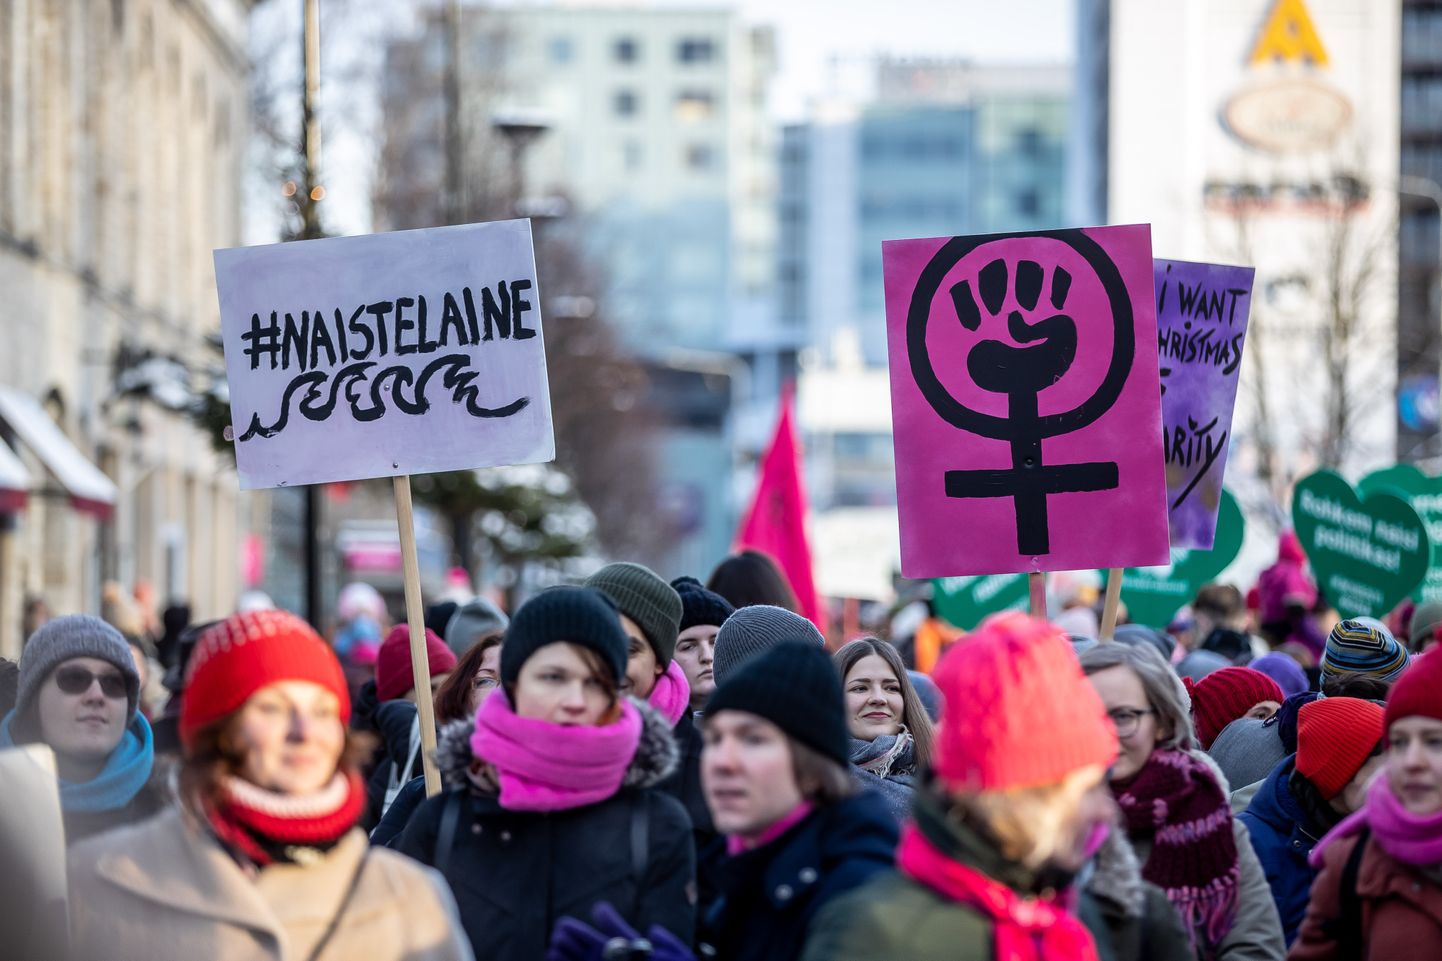 Tallinn 19.01.2019
Naiste marss.
Women's March Tallinn
Foto: Sander Ilvest, Eesti Meedia